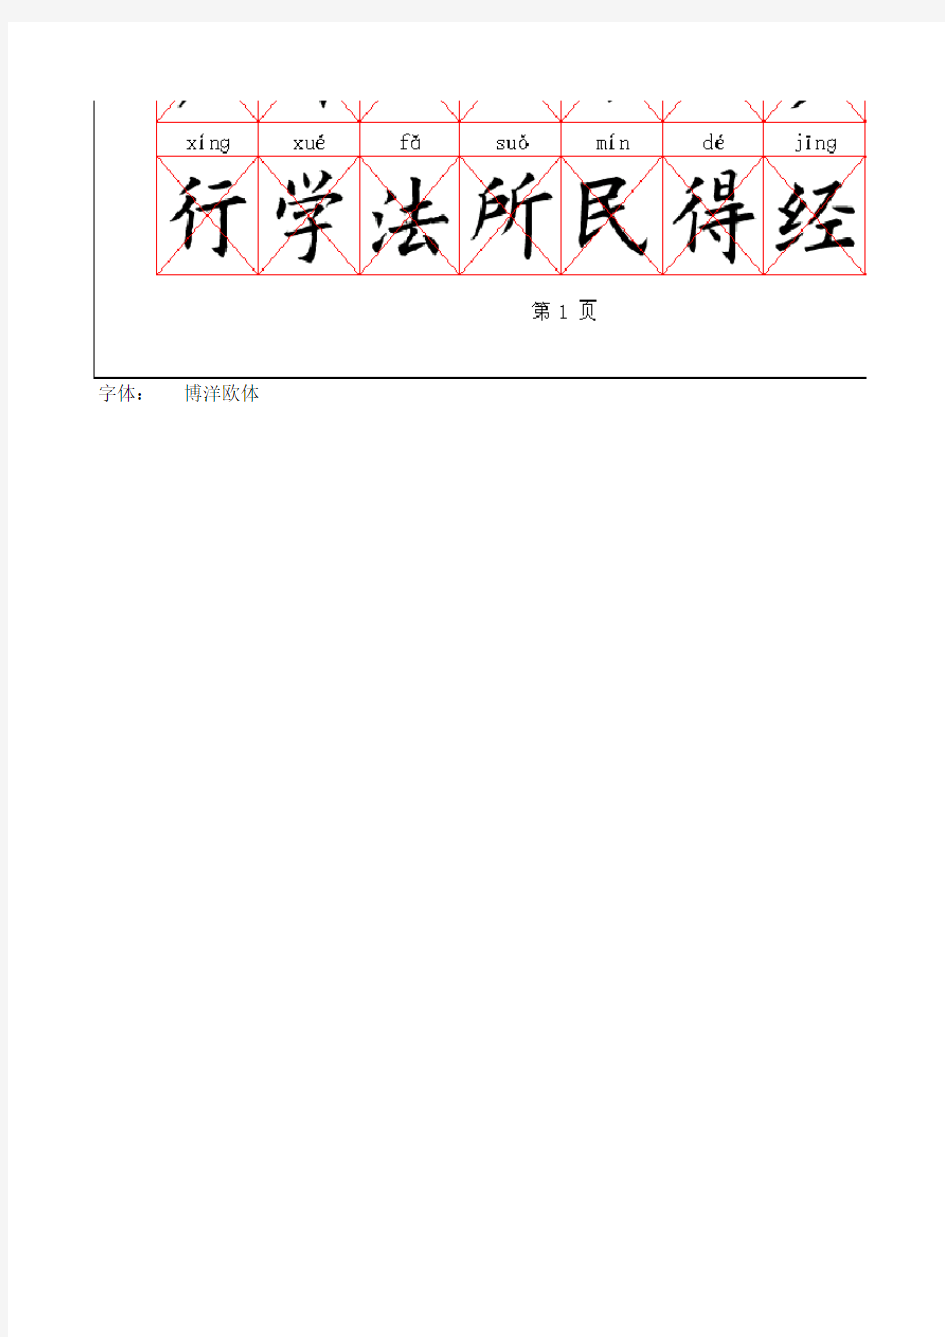 目前最常用的500个汉字(拼音、字帖版)